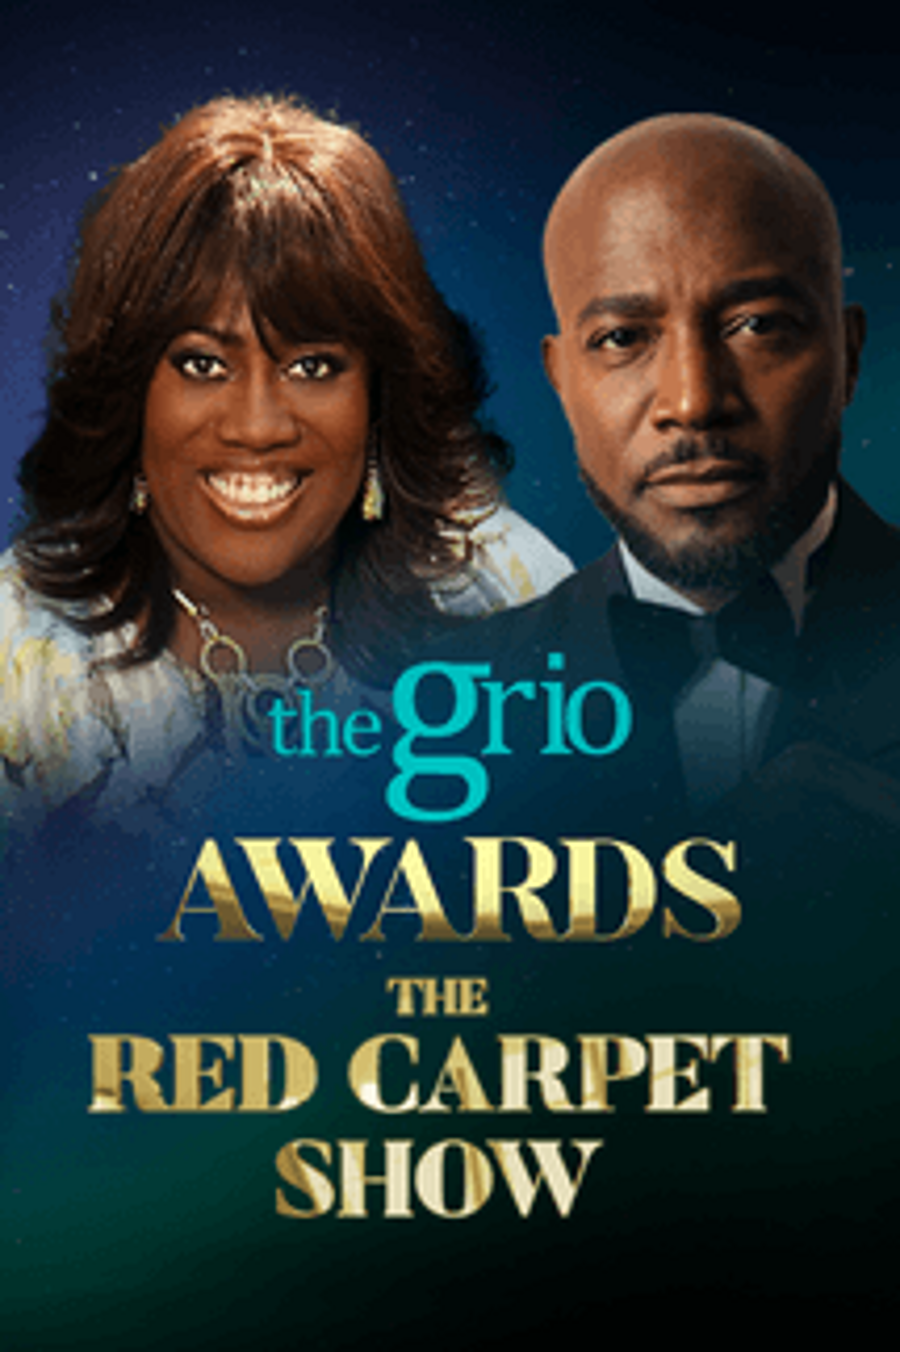 theGrio Awards Red Carpet Show Local Now